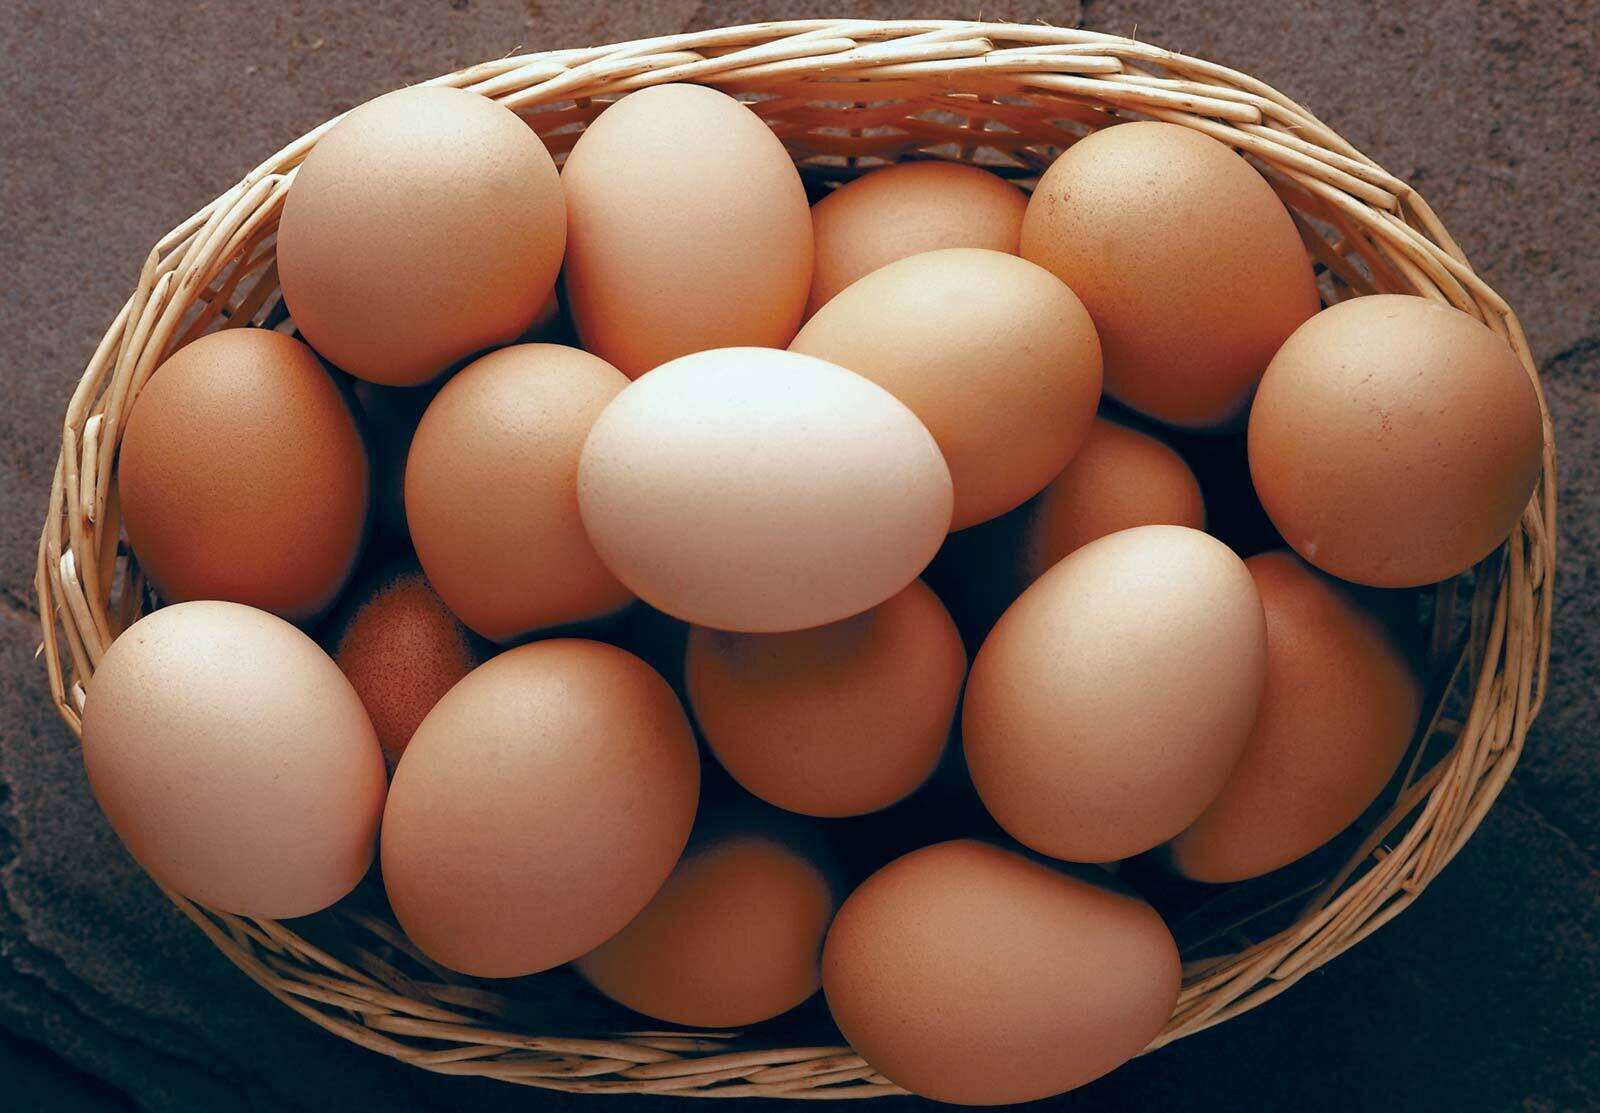 Quả trứng mới, ngon sẽ có lớp vỏ ngoài sáng bóng, mịn và không bị nứt. (Ảnh: Pastures Poultry)